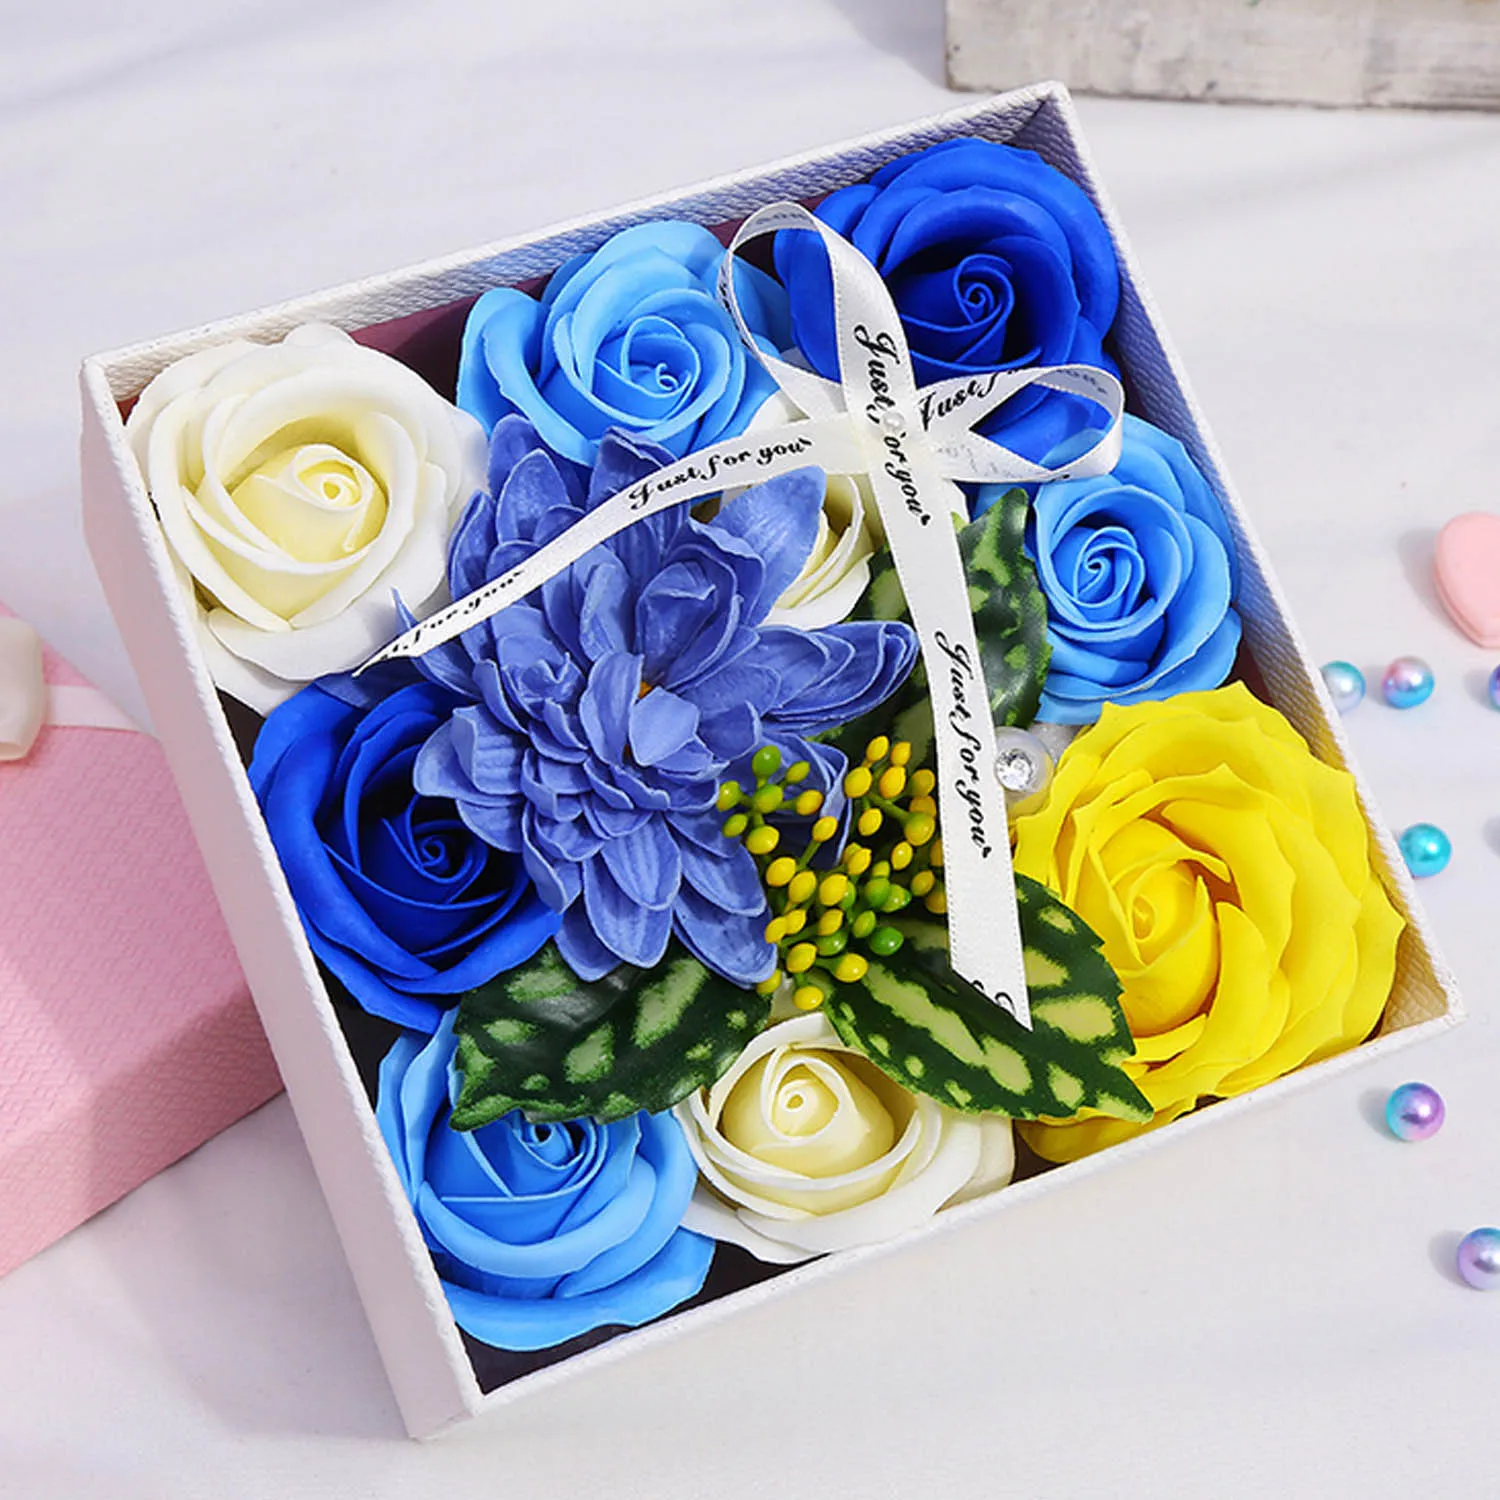 Мыло с розой искусственный флоры Ароматическая ванна мыло с коробкой для мамы девочек любителей день рождения День Святого Валентина